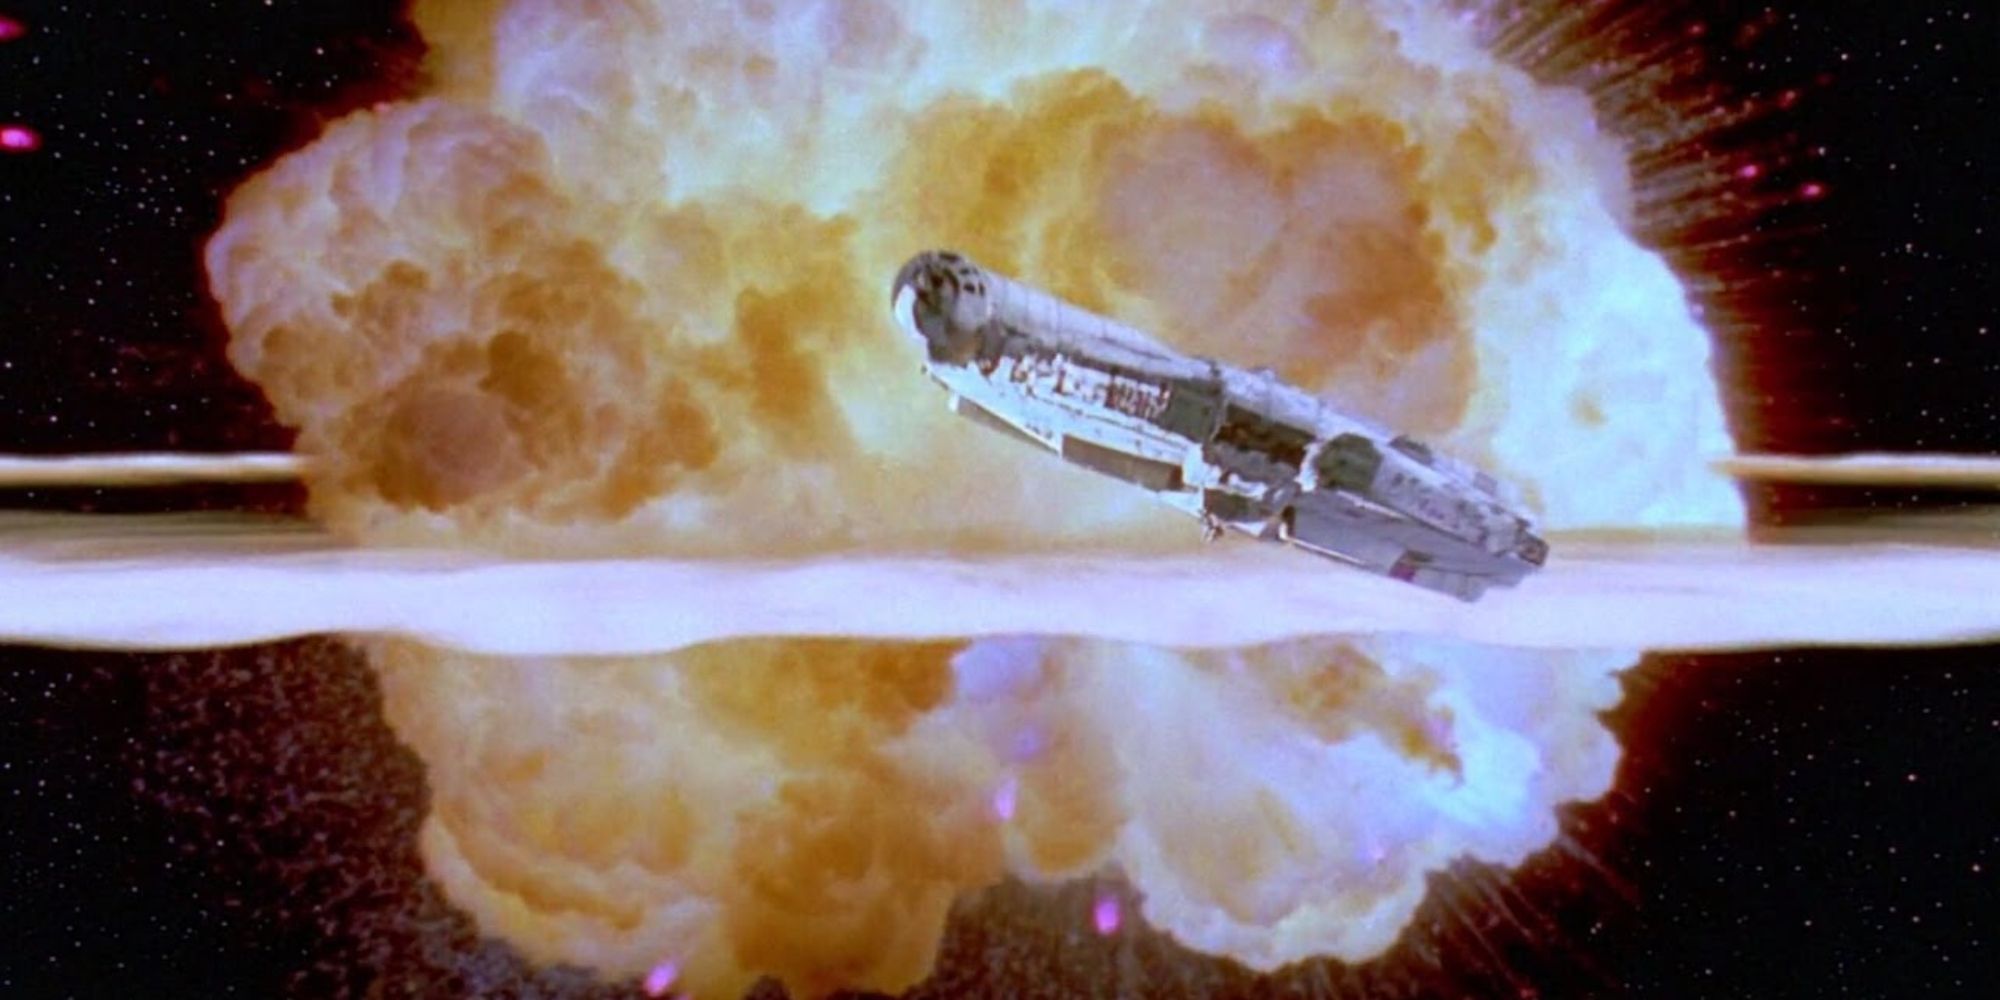 The Millennium Falcon escapes the Death Star 2 in Return of the Jedi.